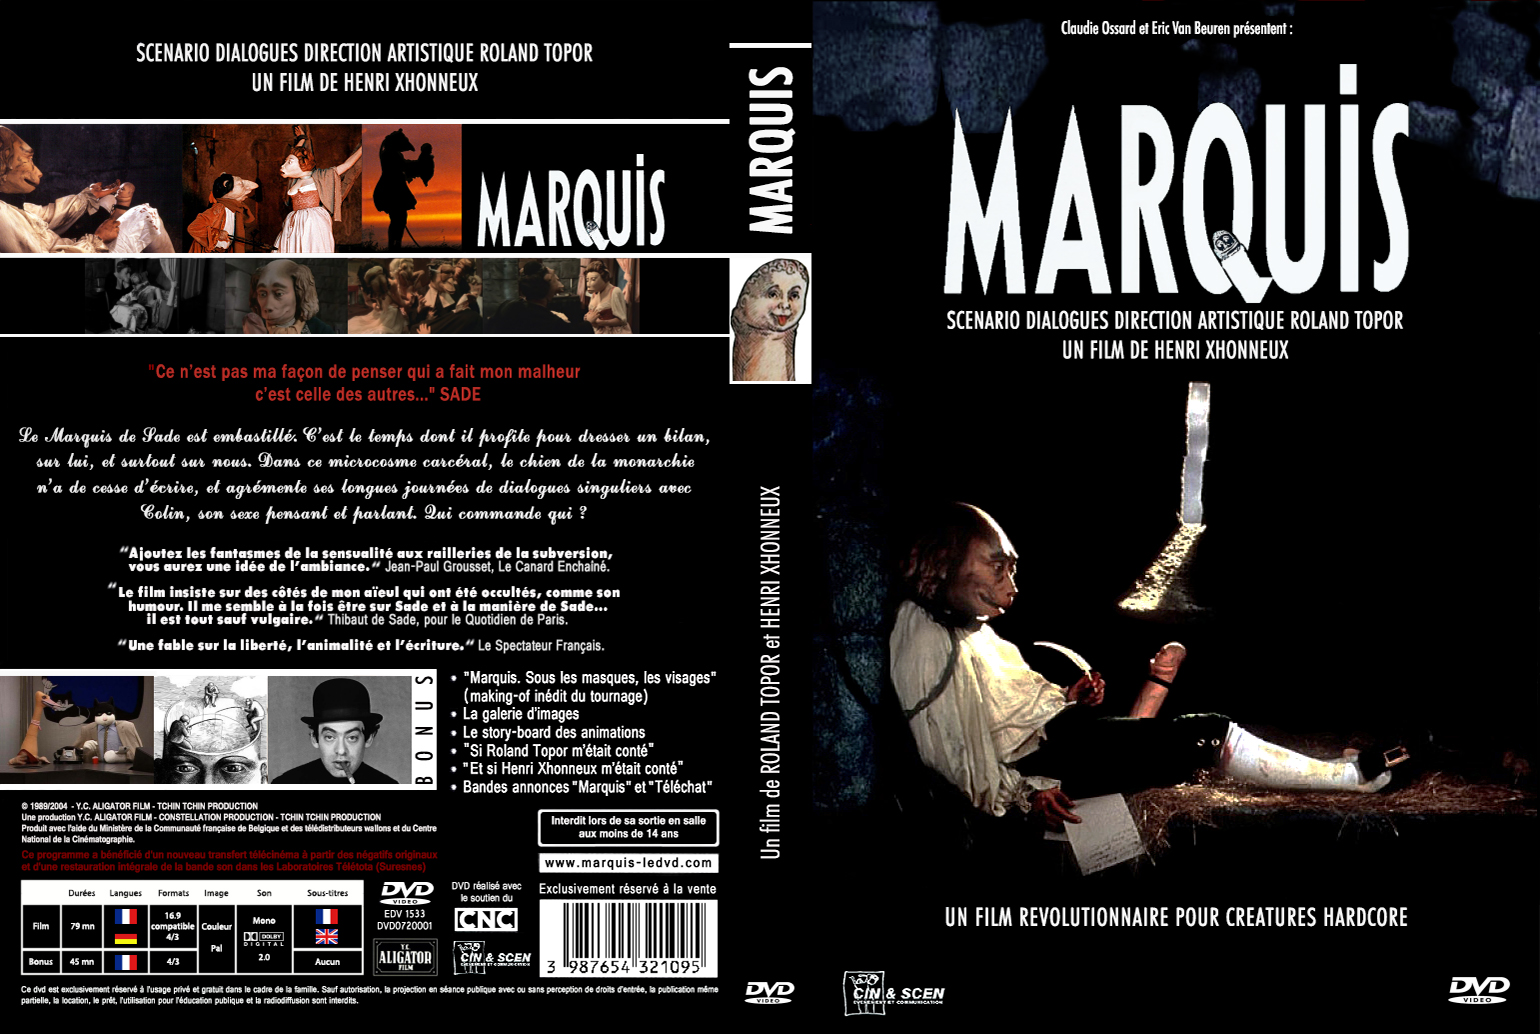 Jaquette DVD Marquis custom